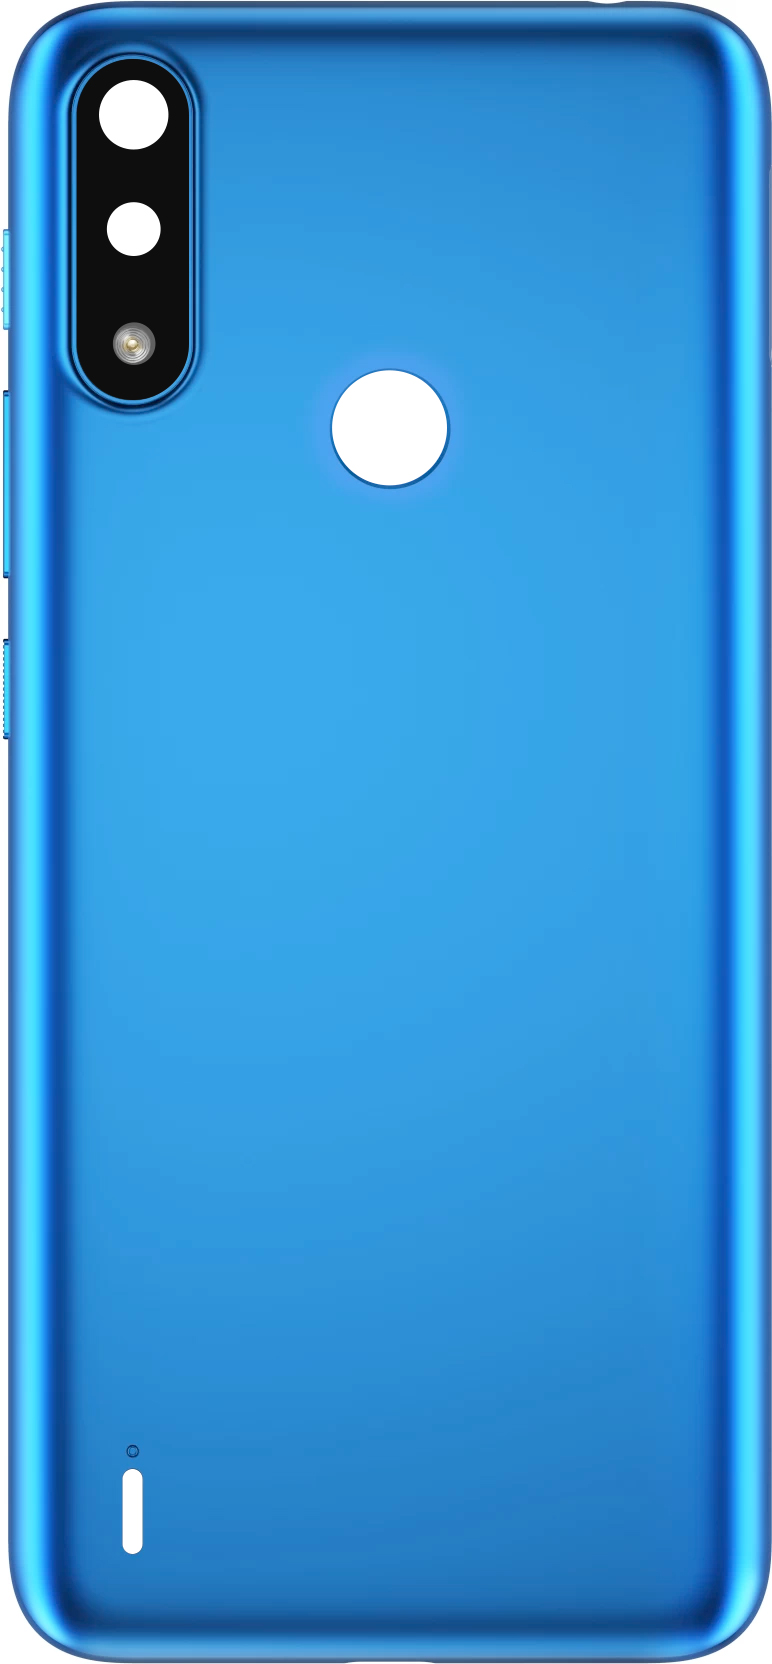 Capac Baterie Motorola Moto E7i Power / E7 Power, Albastru, Service Pack 5S58C18231 